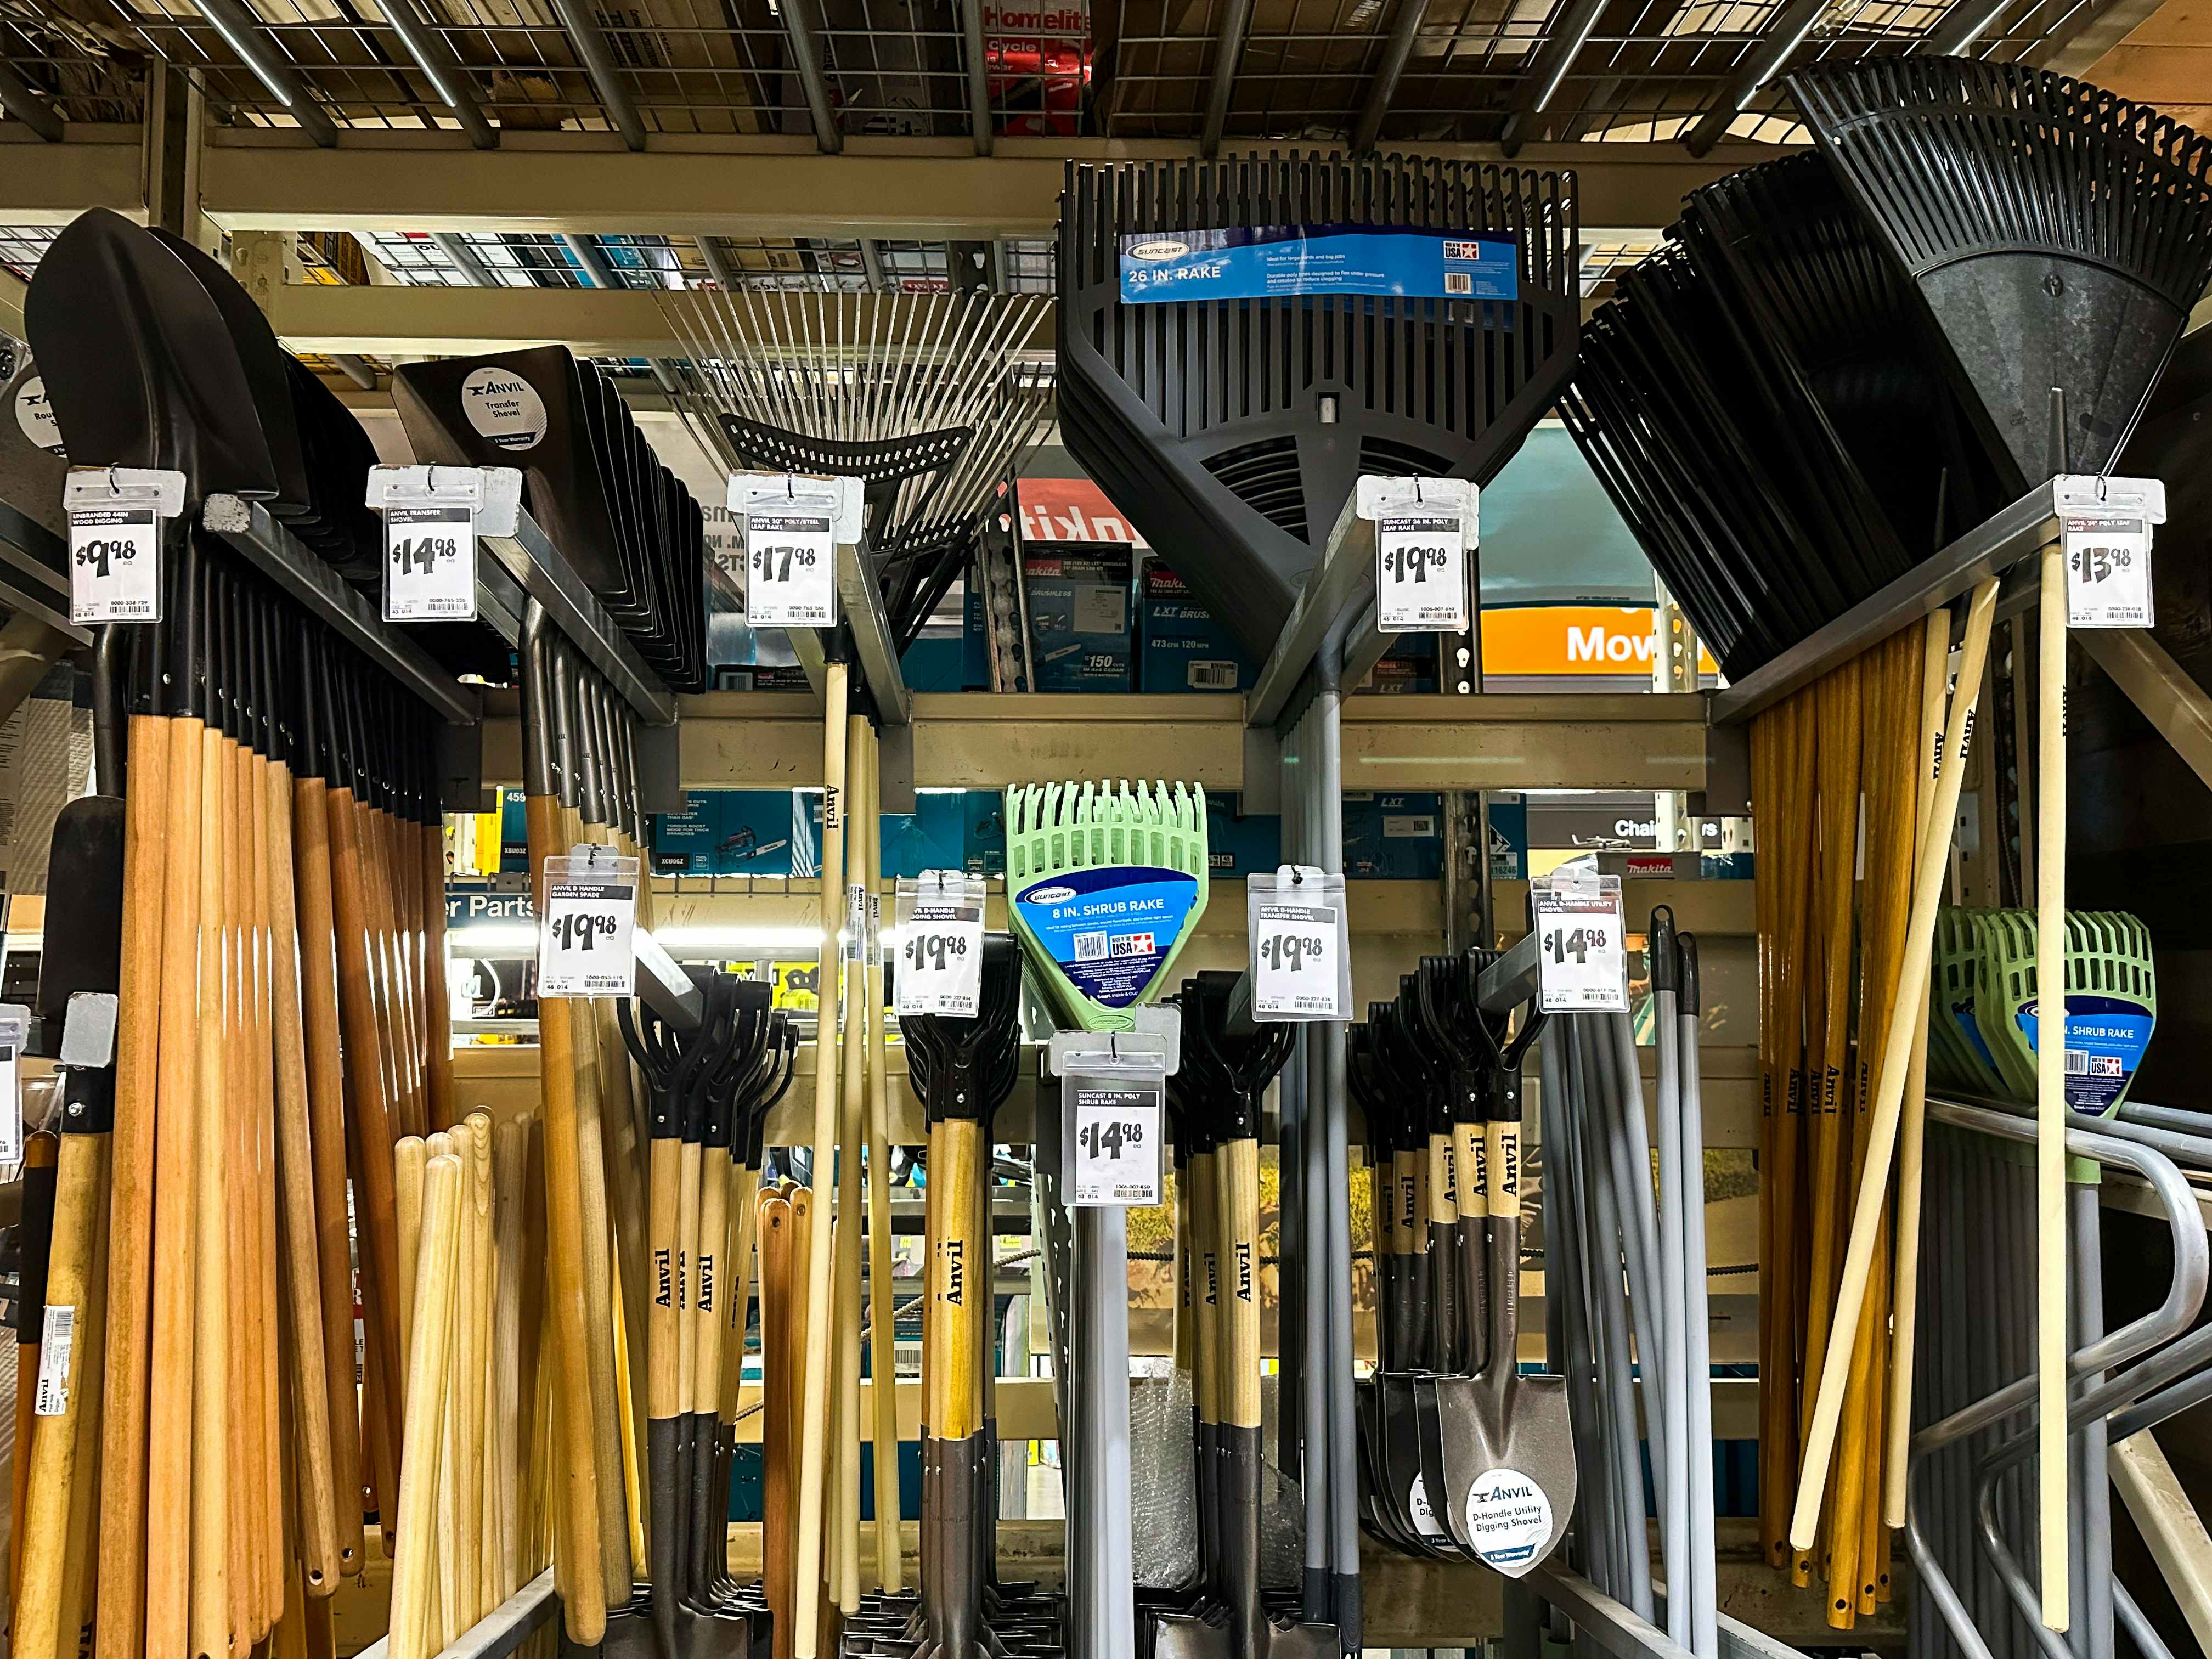 Rakes and shovels hanging up at Home Depot